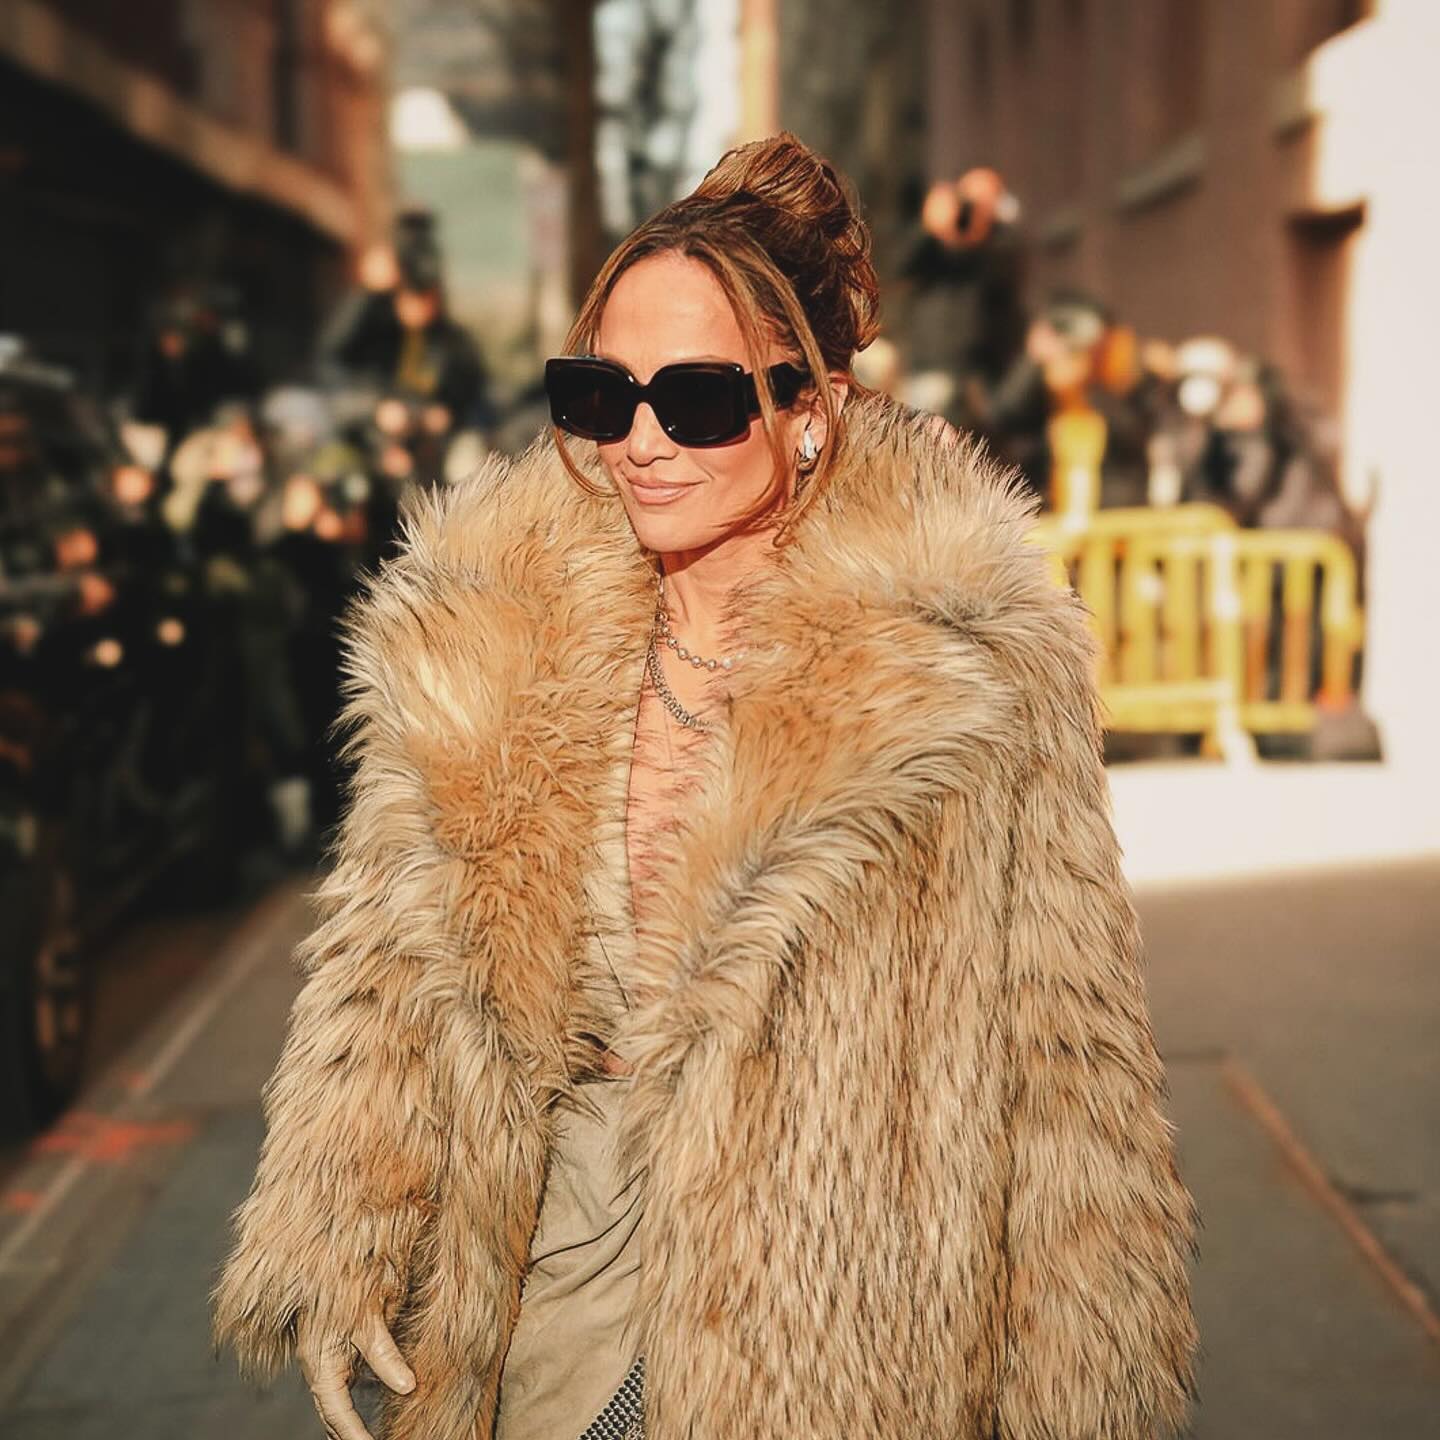 Dive into glamour like Jennifer Lopez in Emanuelle Khan shades! 😎 #jlo #optiekvanlindt